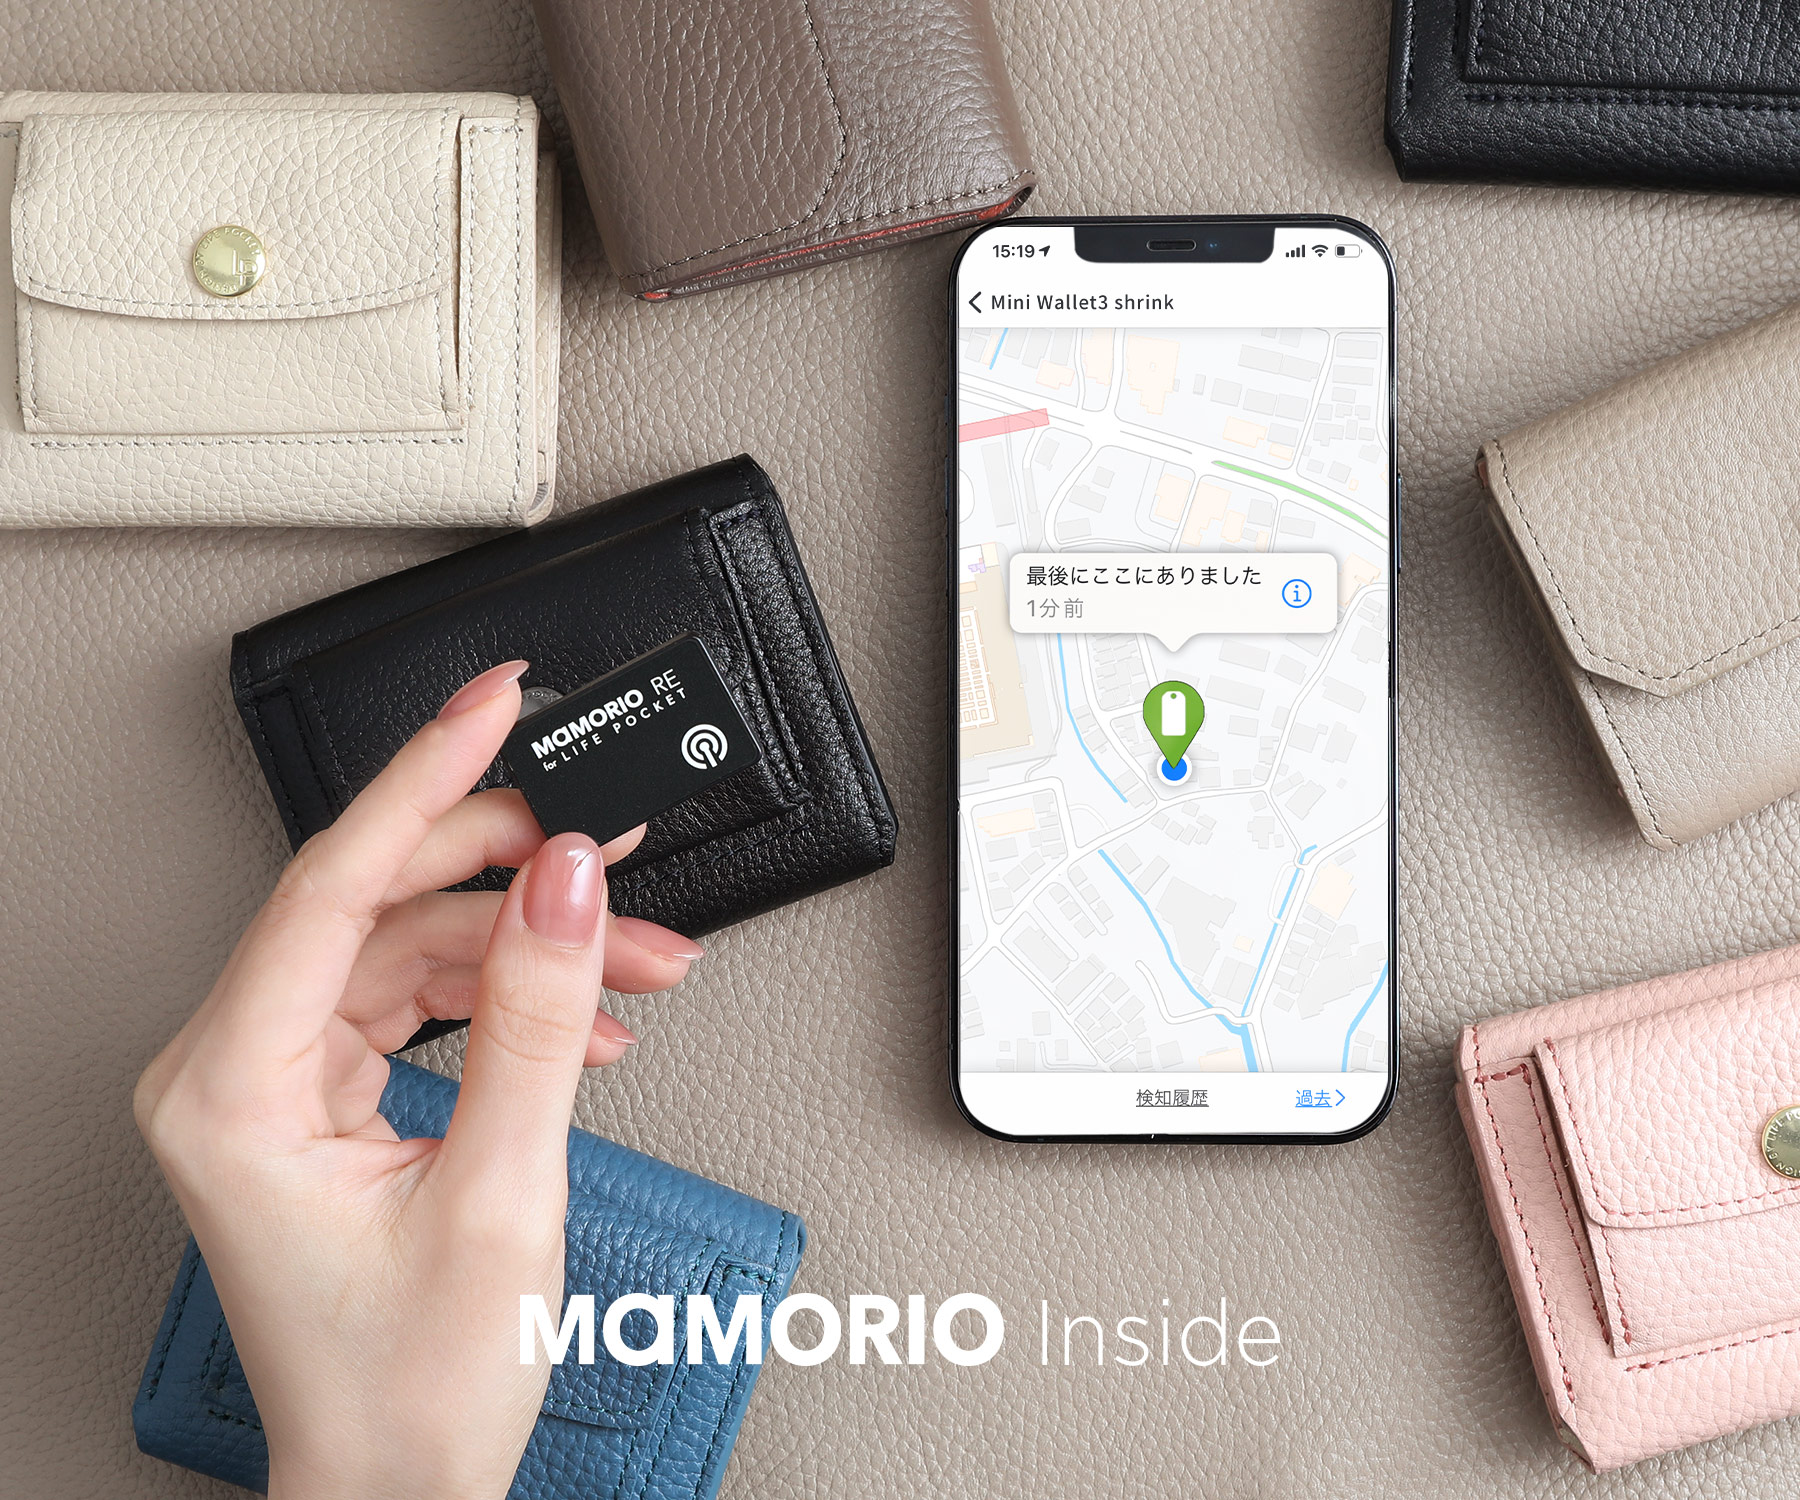 新製品 Mamorio搭載 今までのミニ財布は過去の物に 想像を超えた使い心地の なくさない財布 Life Pocket Mini Wallet3 Shrink がmakuakeで受注開始 株式会社ライフポケットのプレスリリース